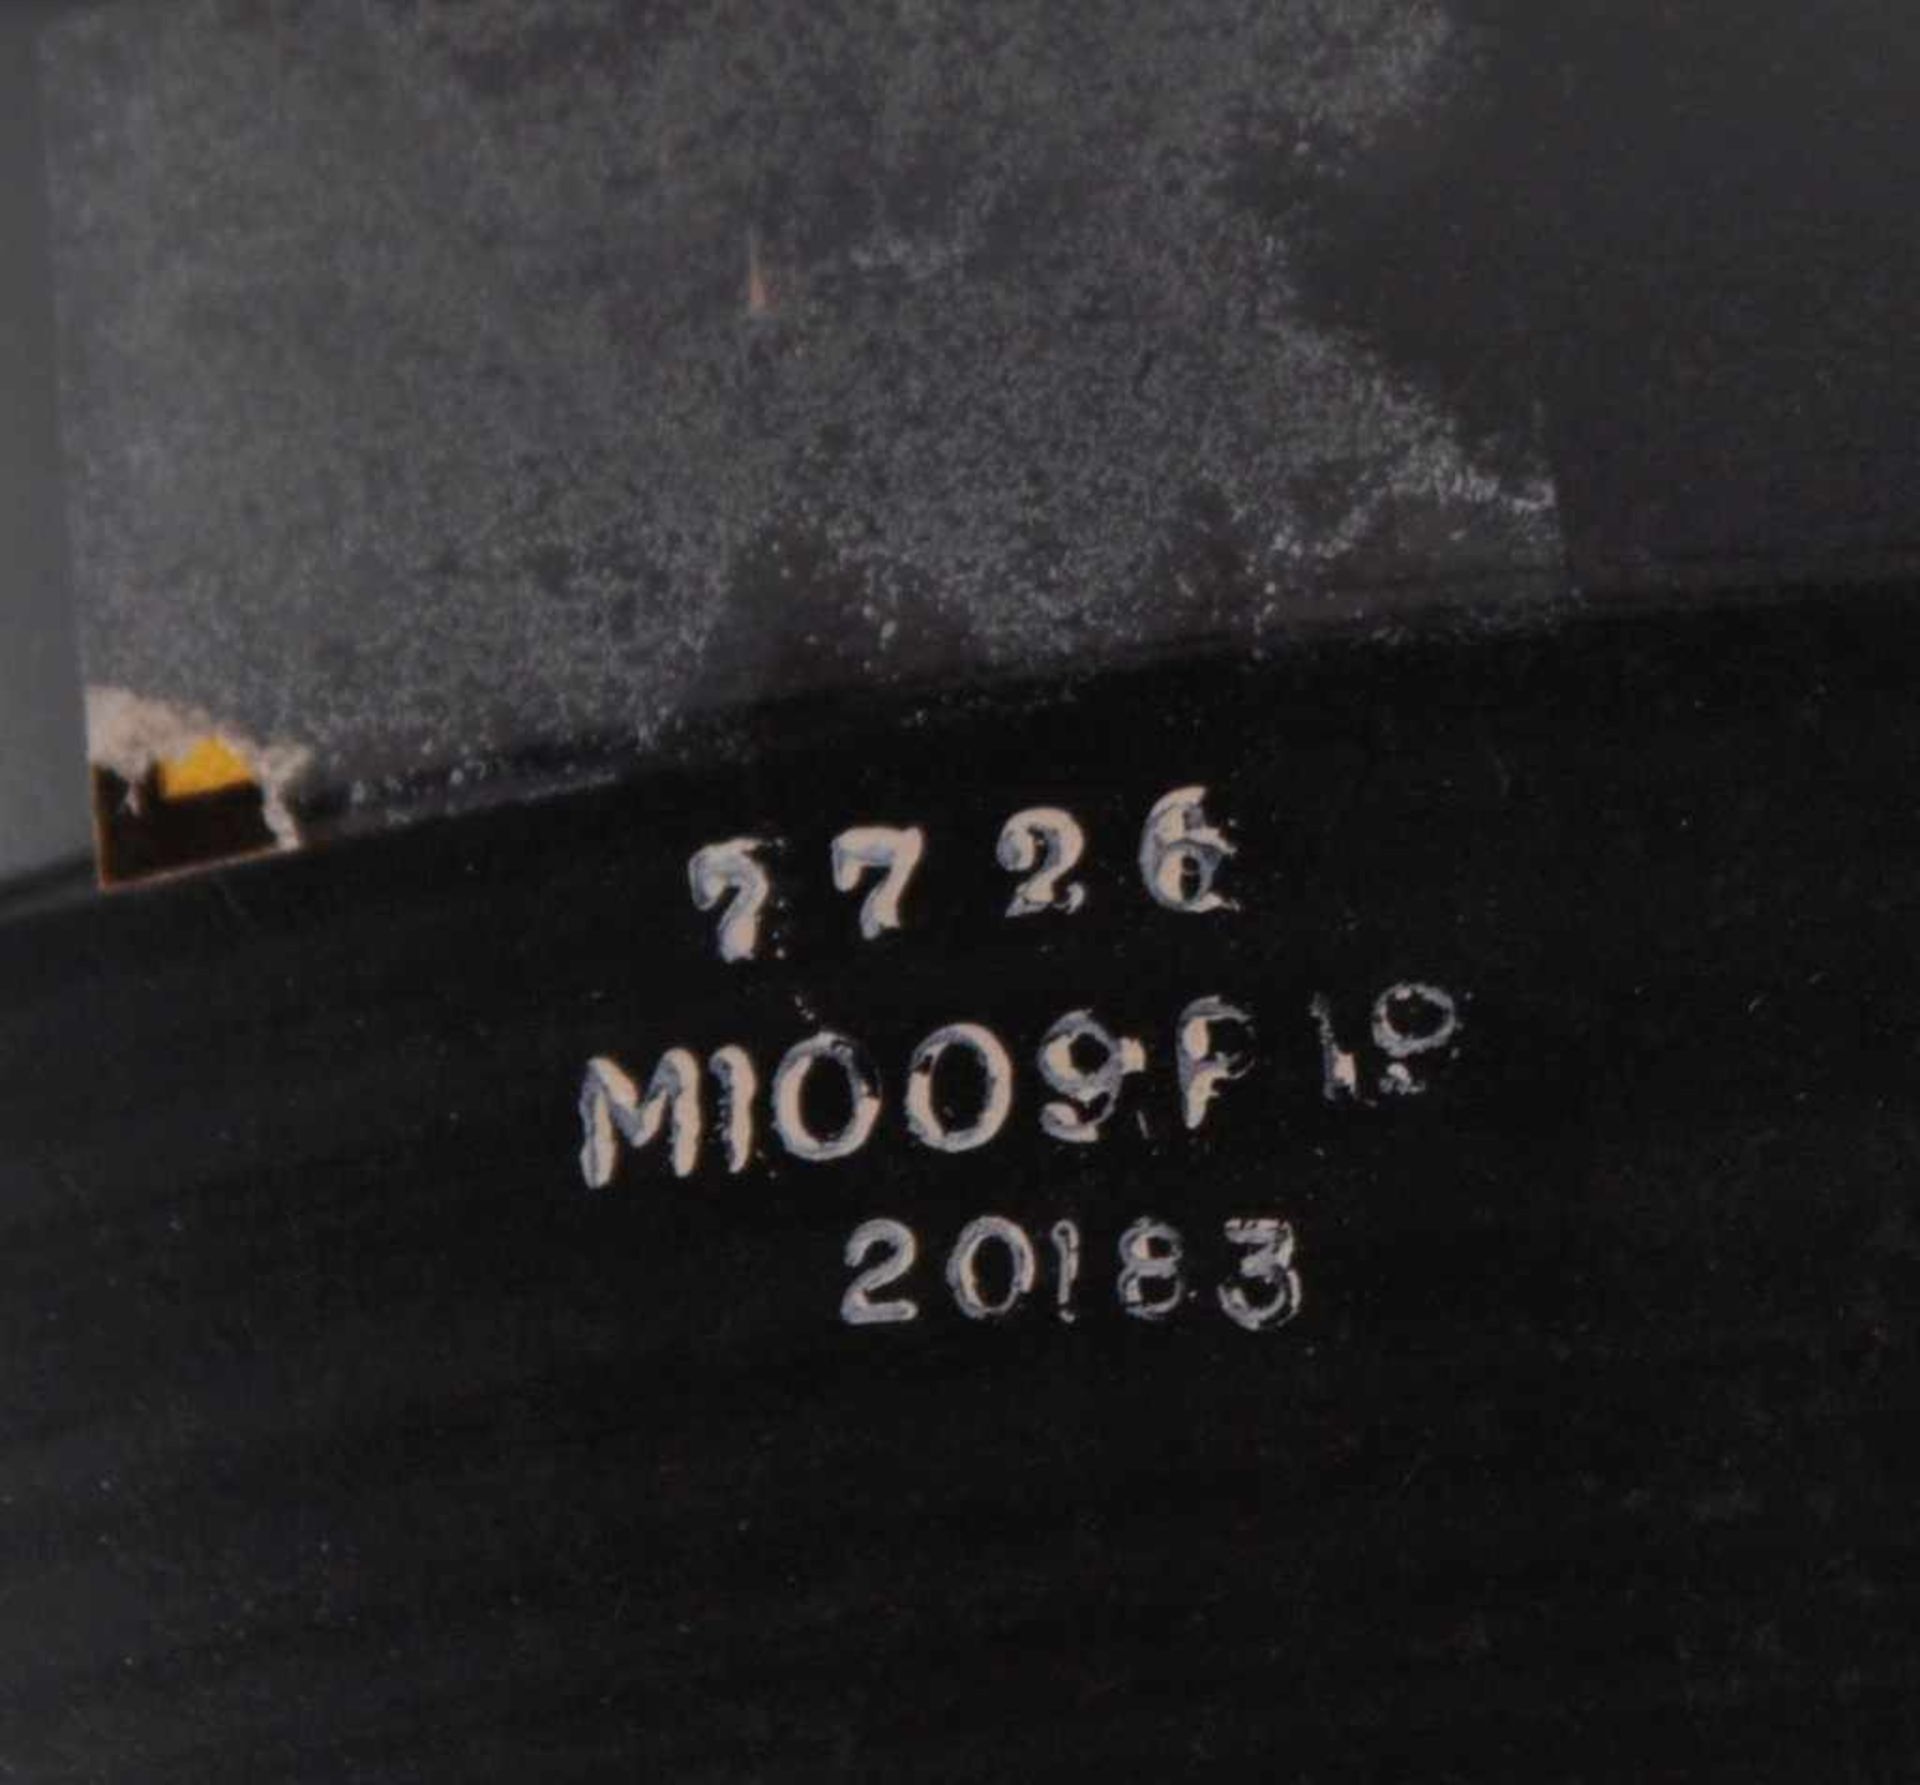 Sehr großes LeuchtmittelNummeriert 776 - M1009P19 - 20183, ca. D-29 cm (unten), H-58cm - Bild 3 aus 4